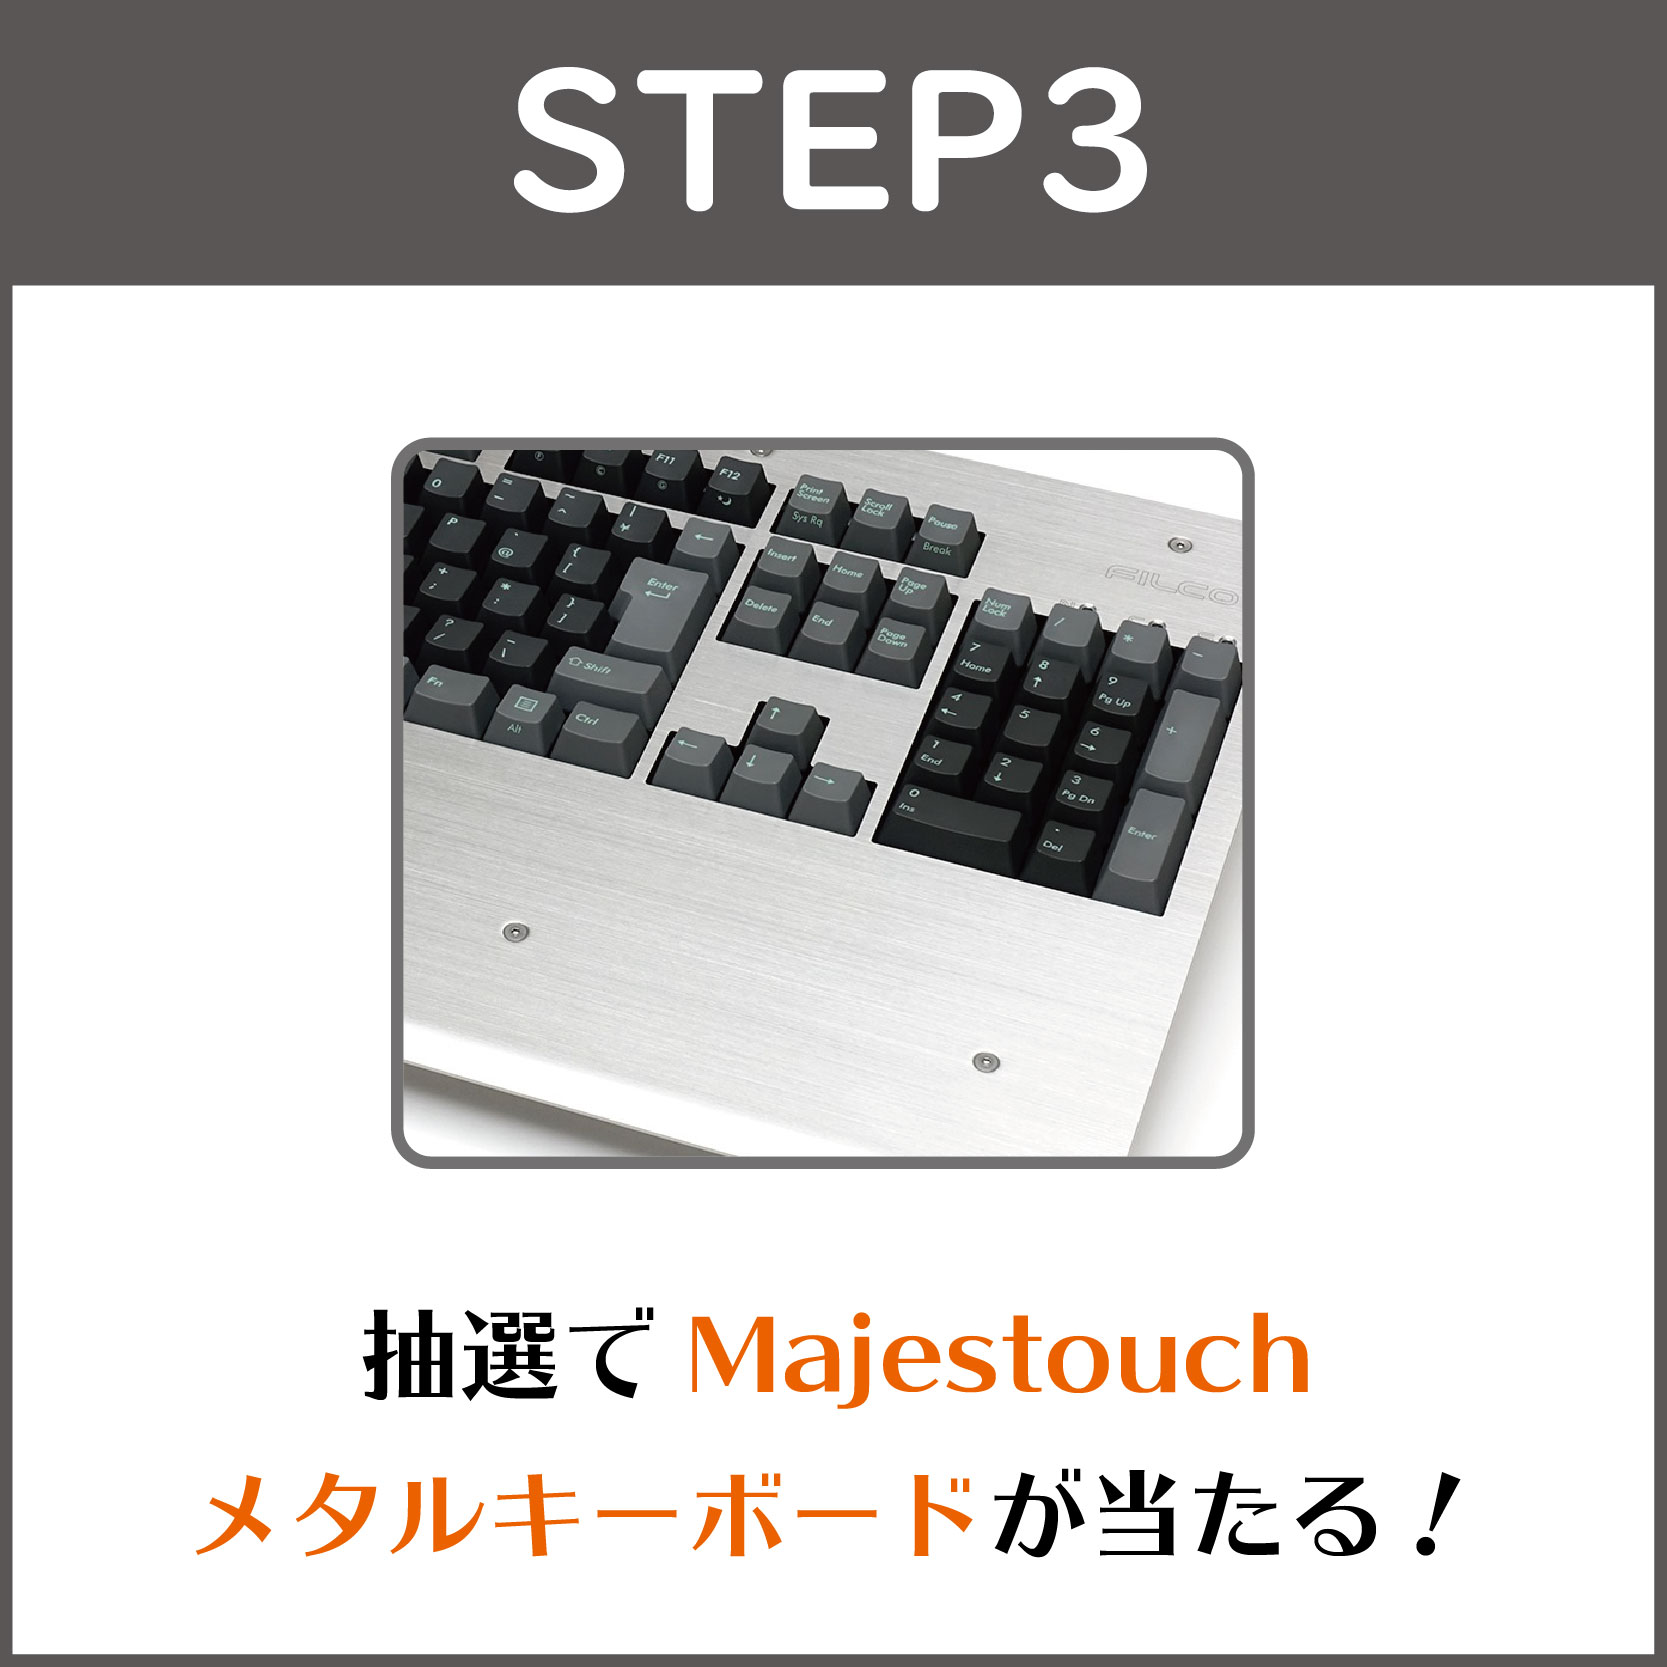 STEP3:1名様にメタルキーボードが当たる！